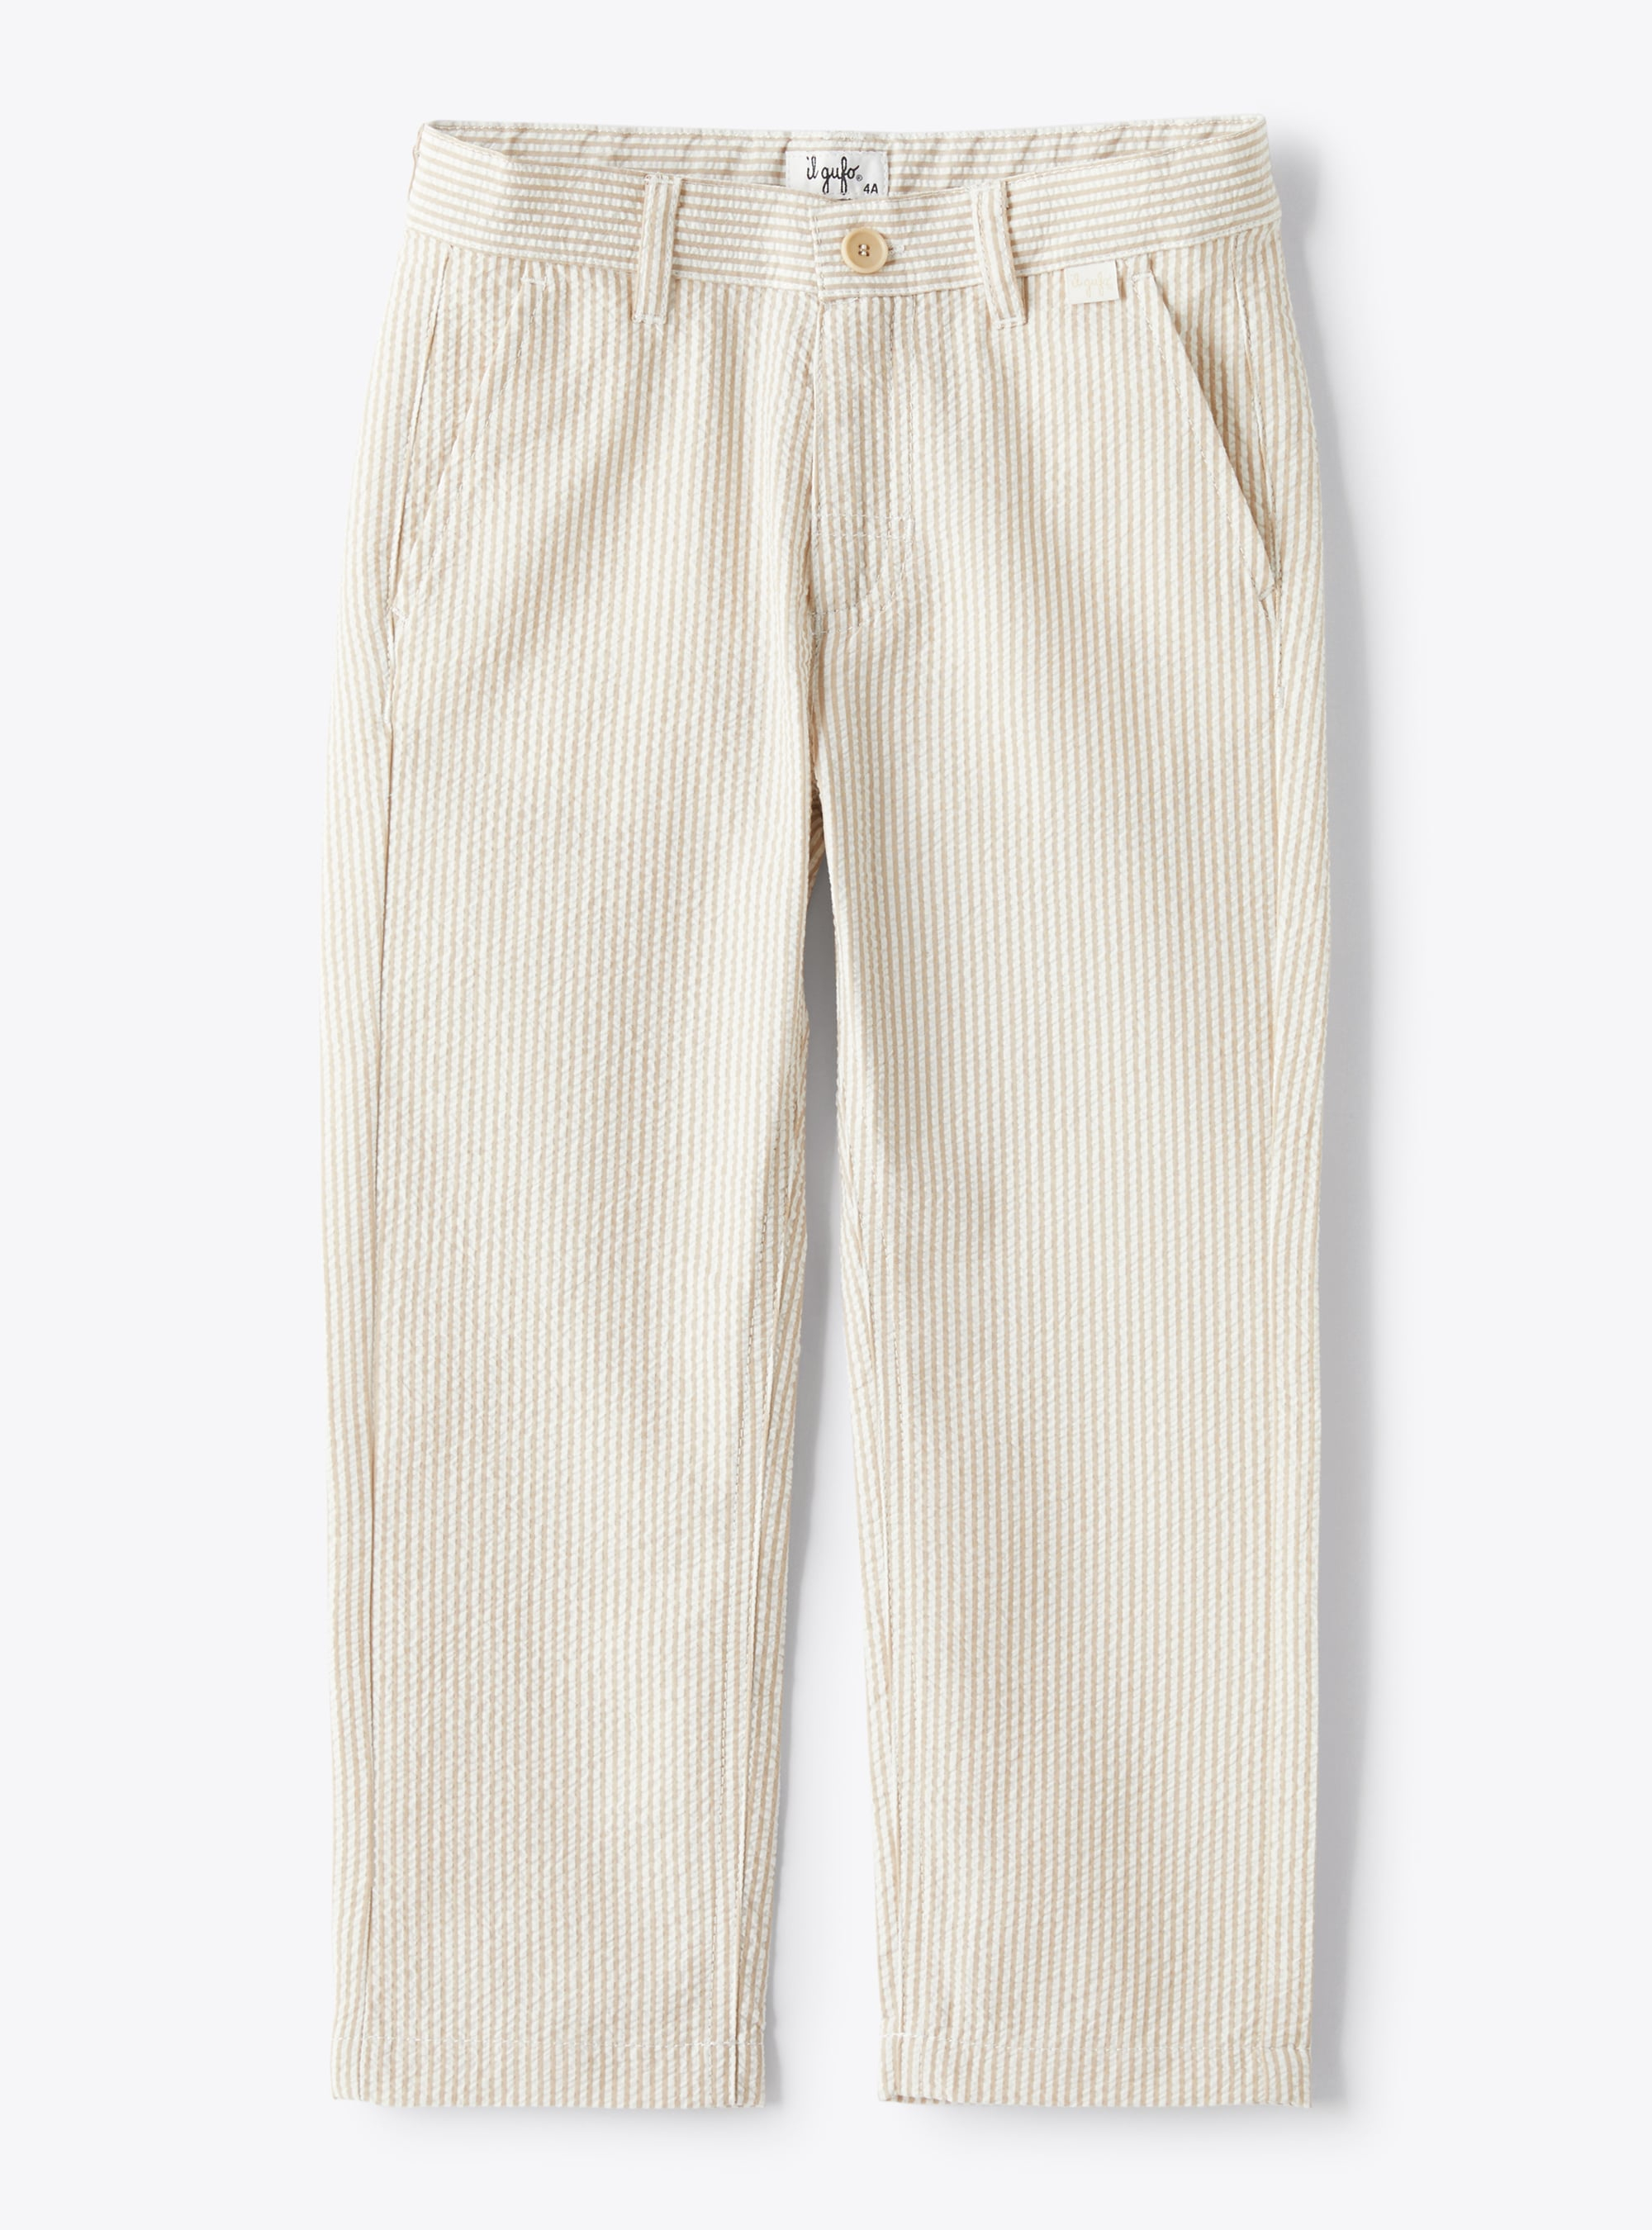 Long trousers in beige-&-white striped seersucker - Trousers - Il Gufo